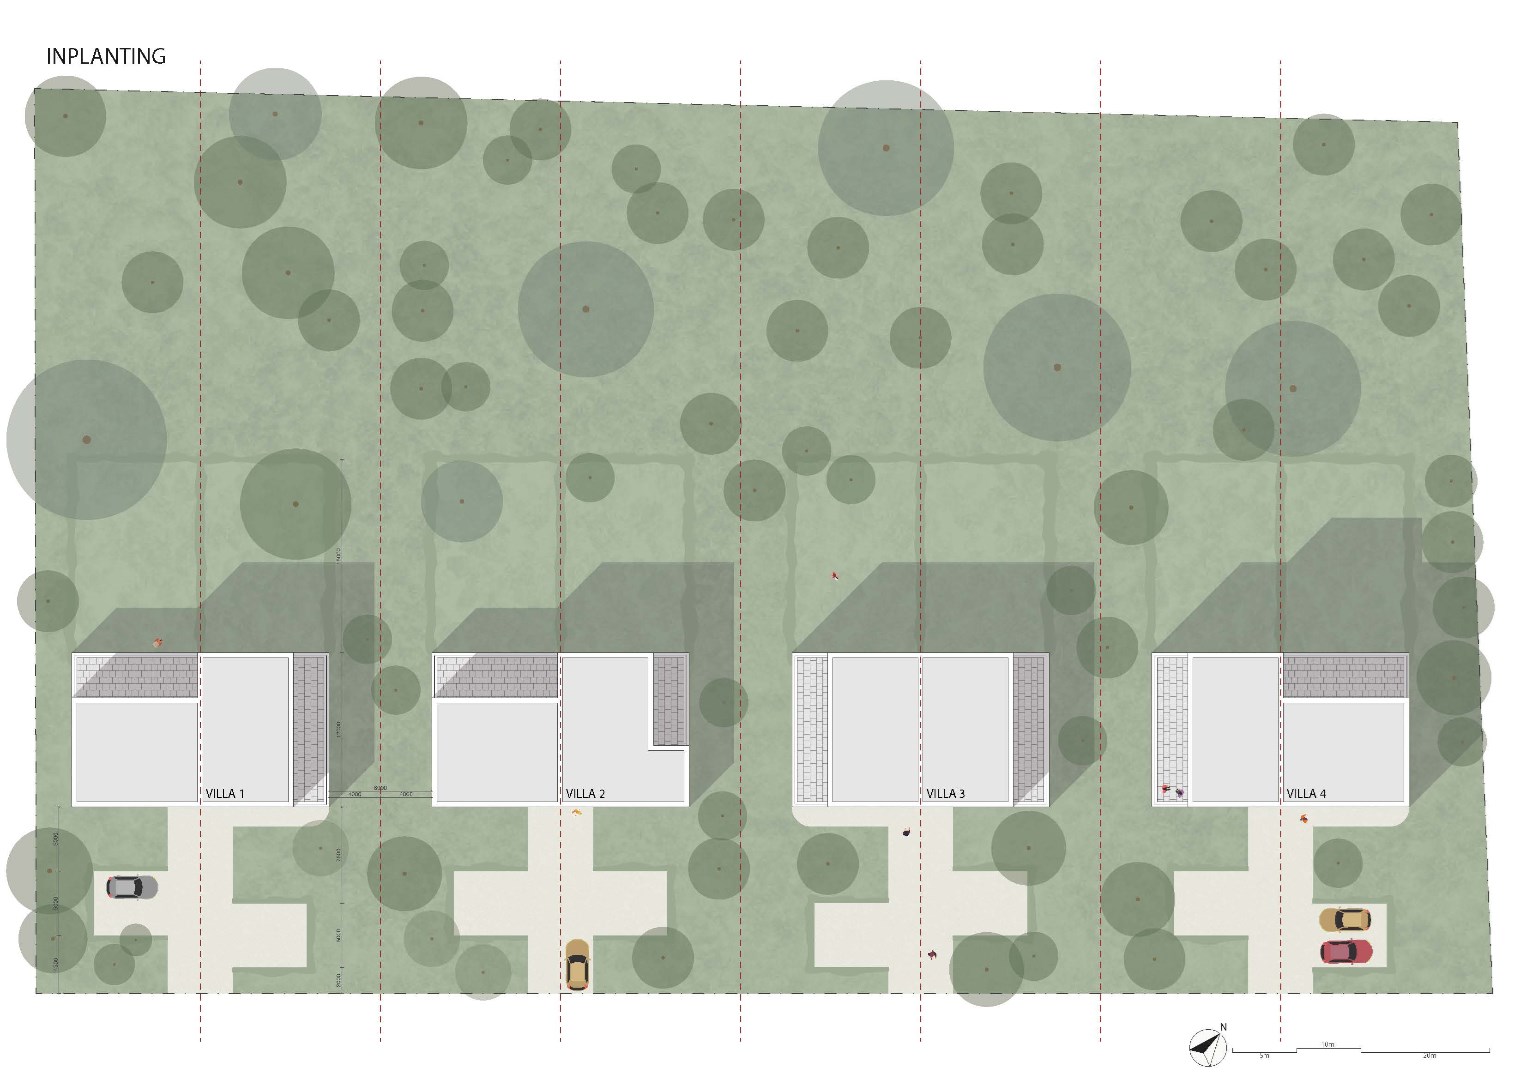 Knappe bouwgronden voor een drie-gevel villa met achterliggend bos foto 2